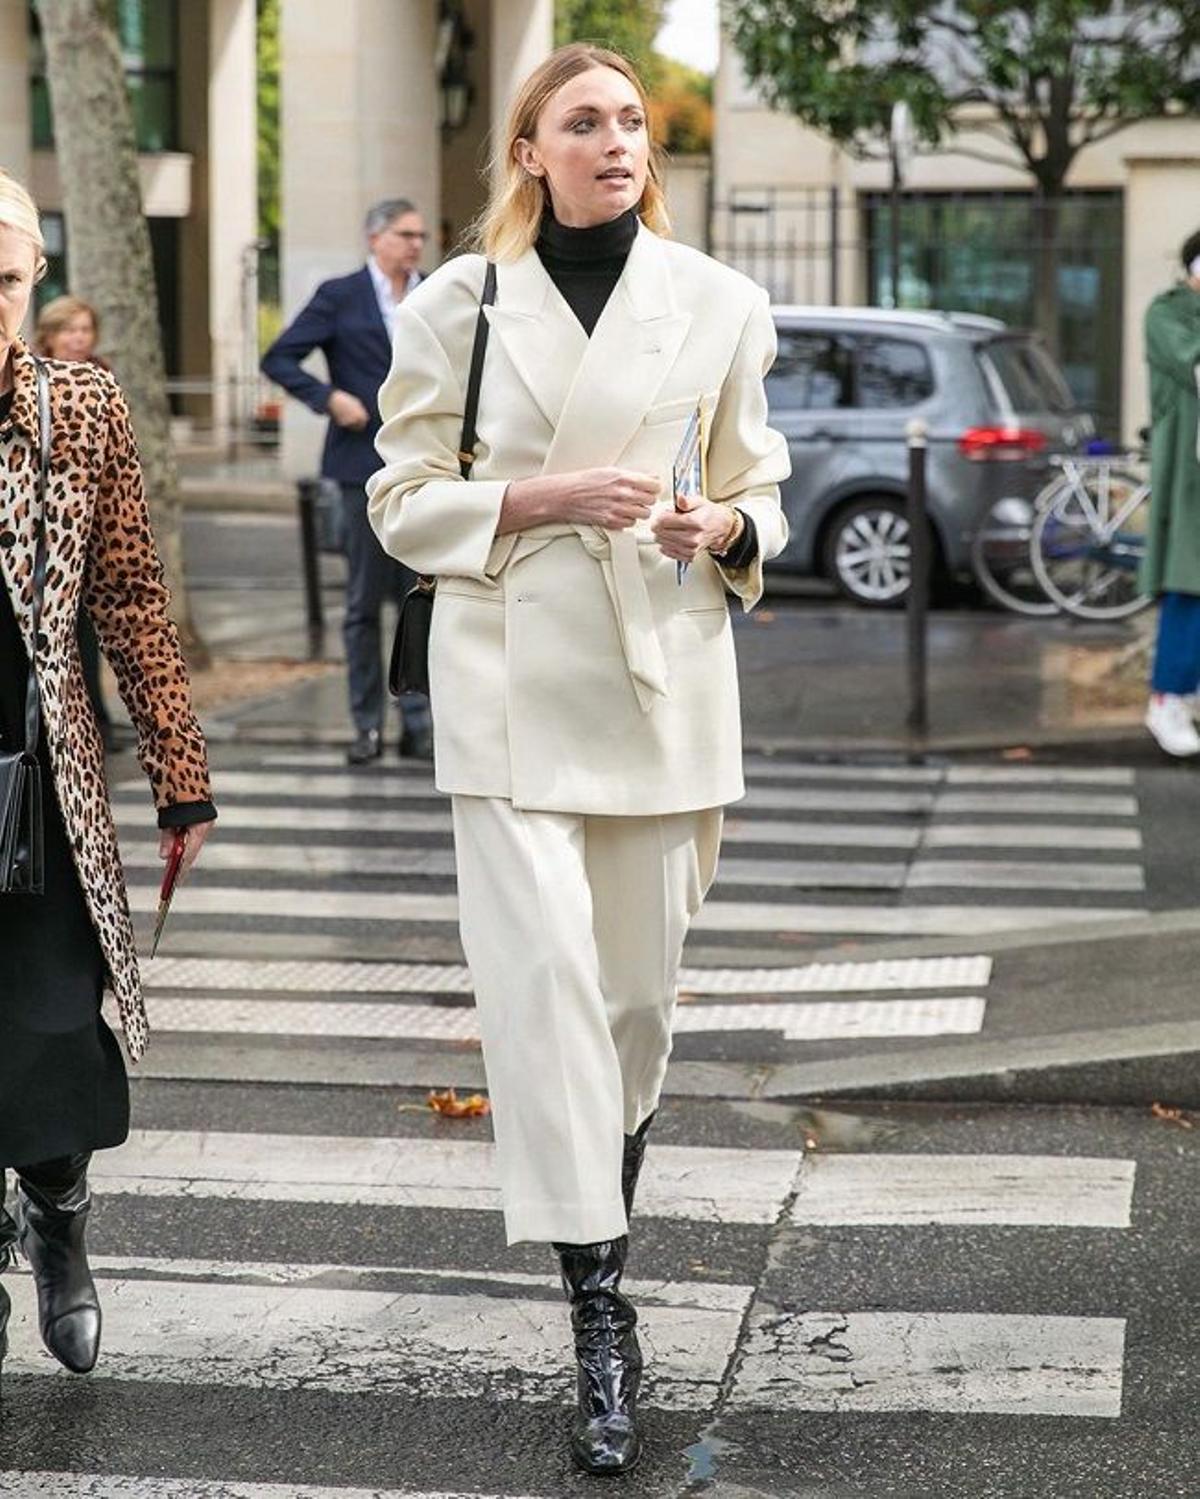 La mejor inspiración de 'street style' para vestir de blanco en invierno